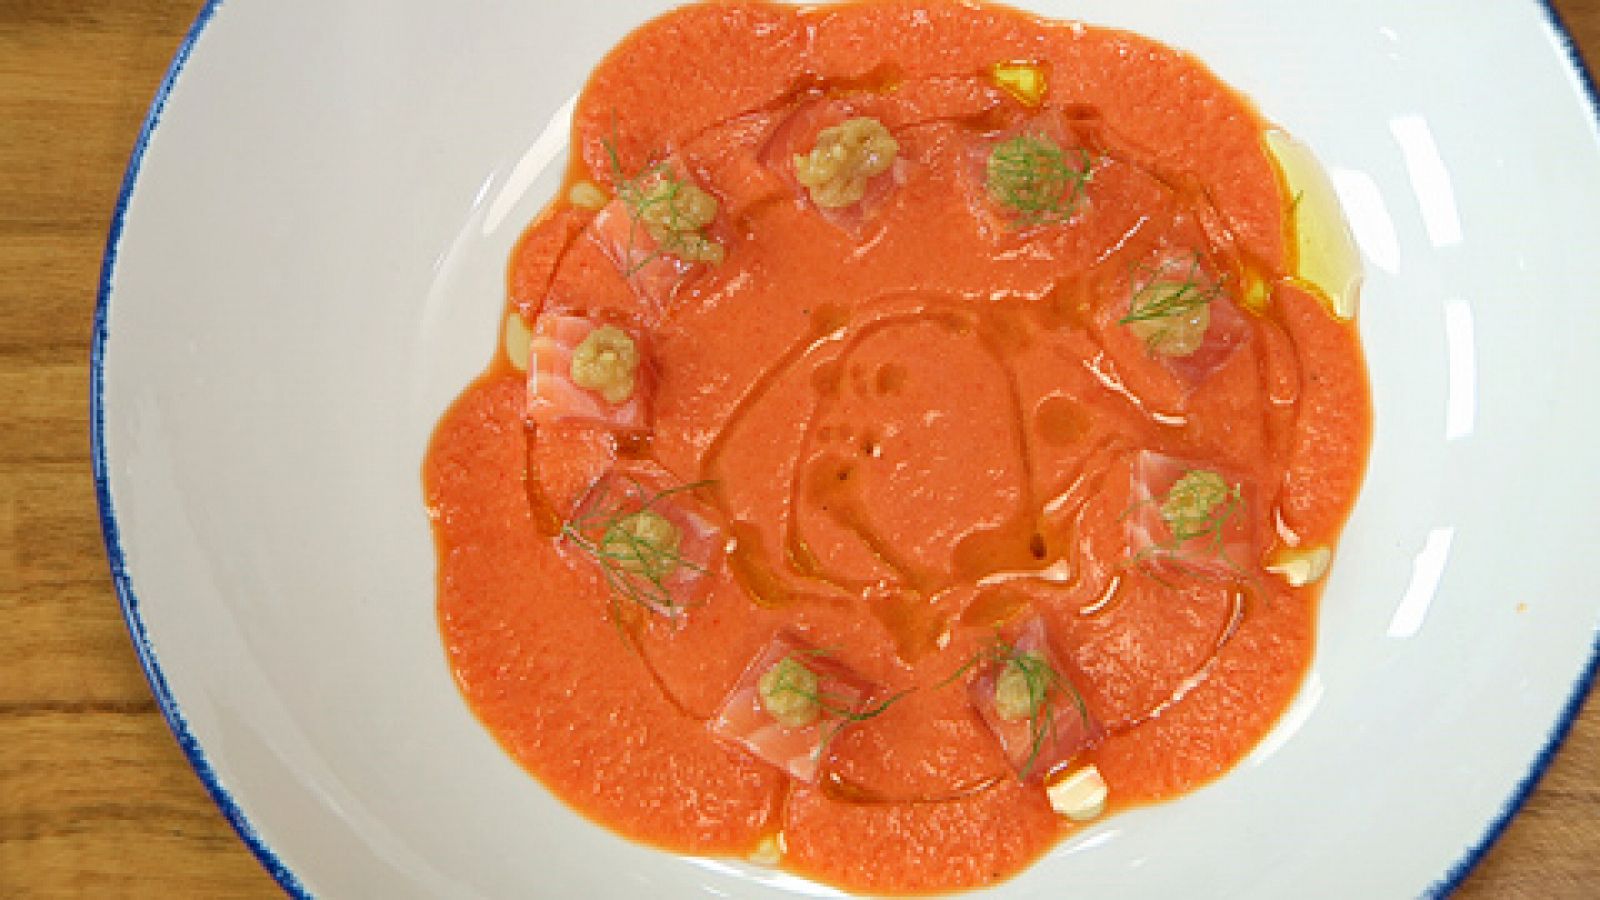 Torres en la cocina - Sopa de verduras con salmón